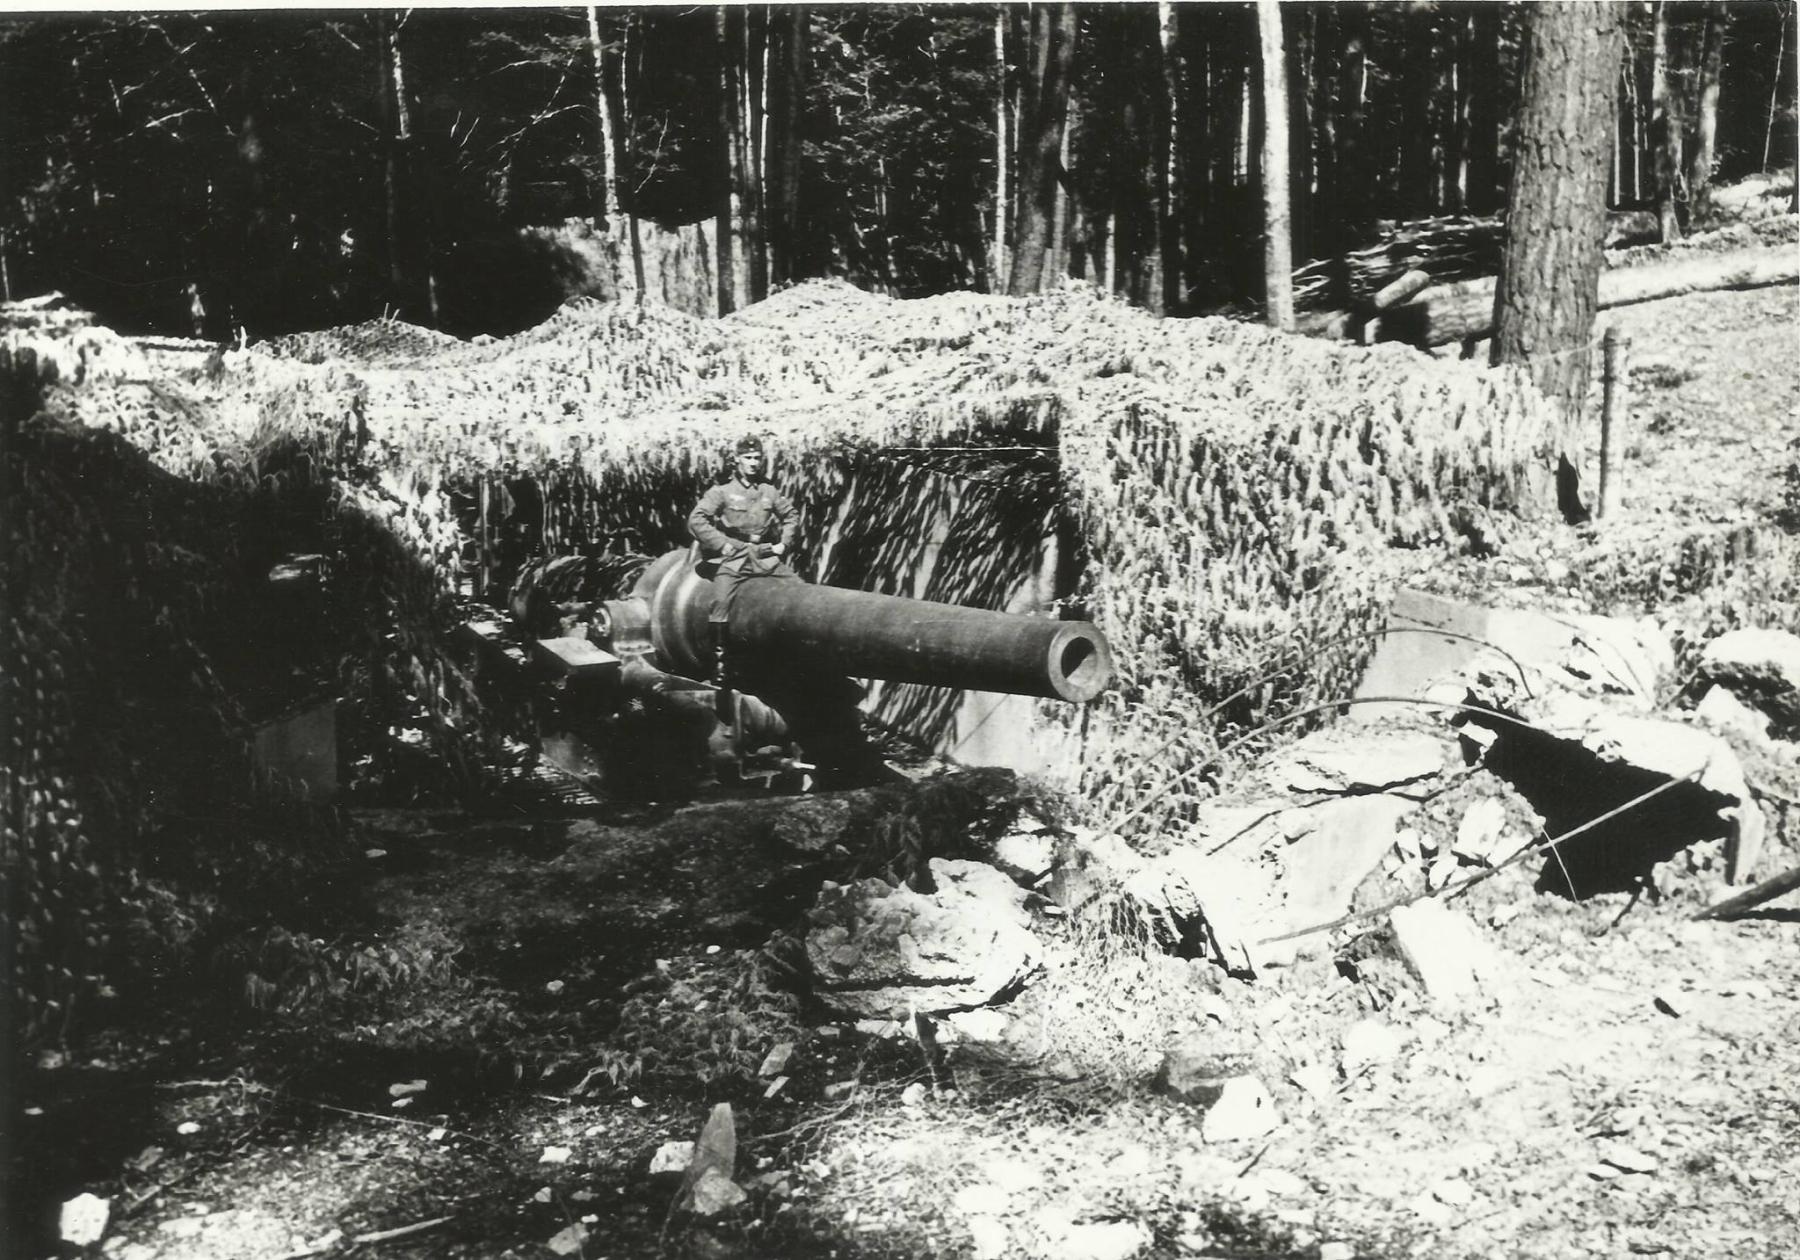 Ligne Maginot - STRENGWALD (BATTERIE DU) - (Position d'artillerie préparée) - L'une des pièces de 240mm modèle 1884 / 17 en 1940
Photo allemande